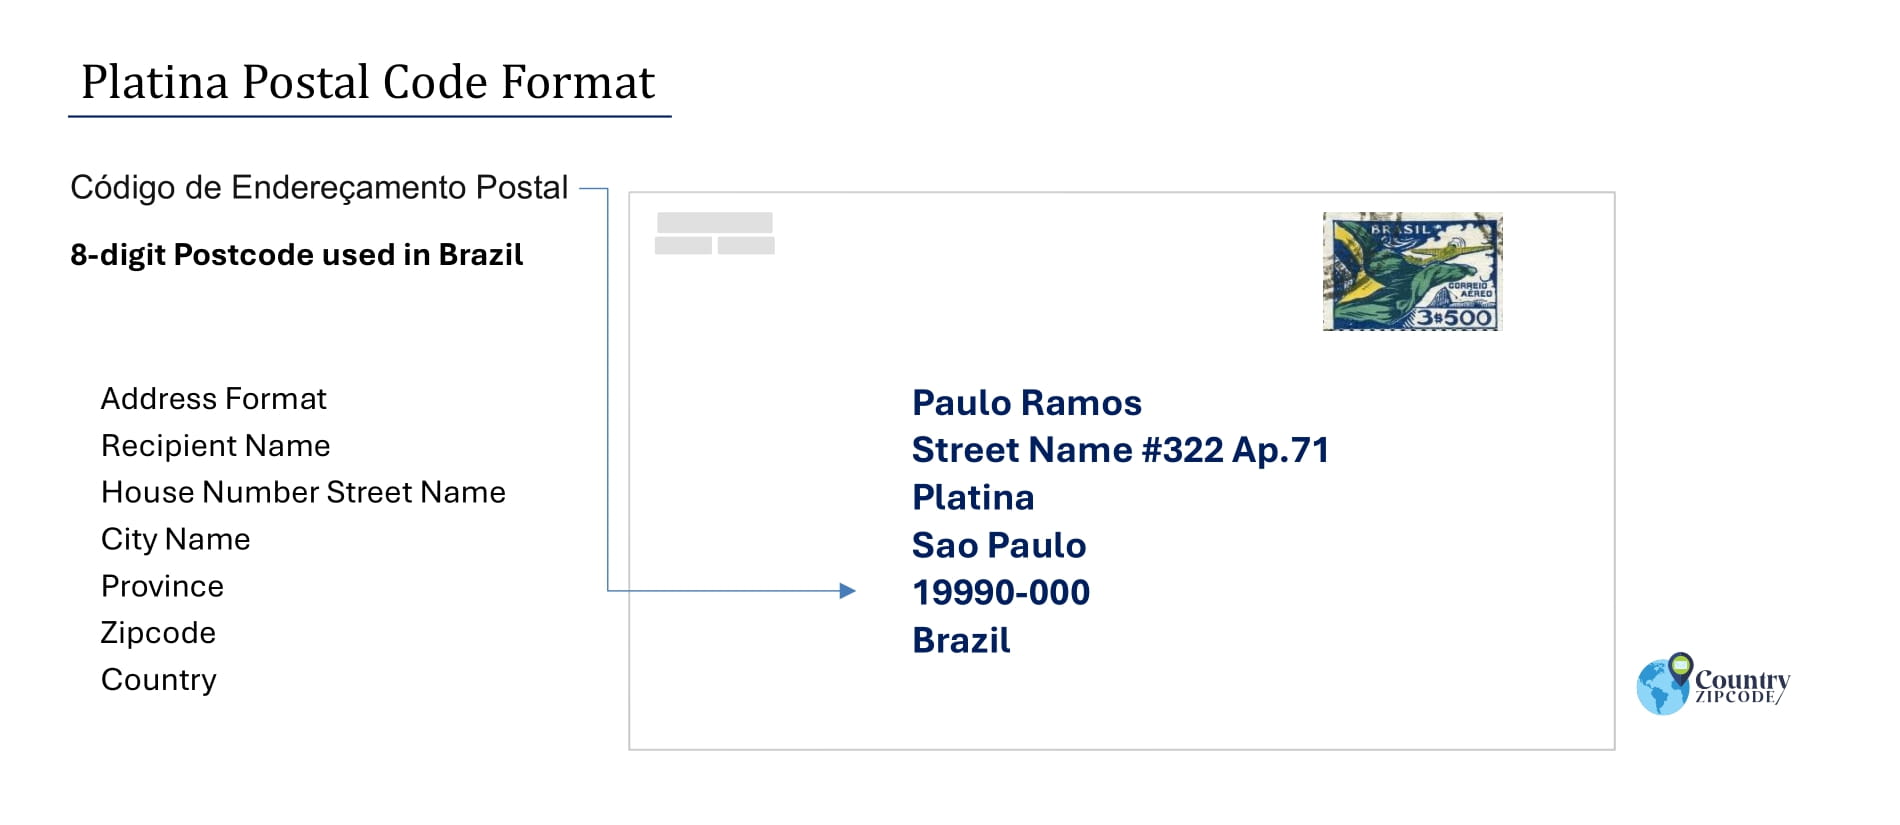 Example of Codigo de Enderecamento Postal and Address format of Platina Brazil